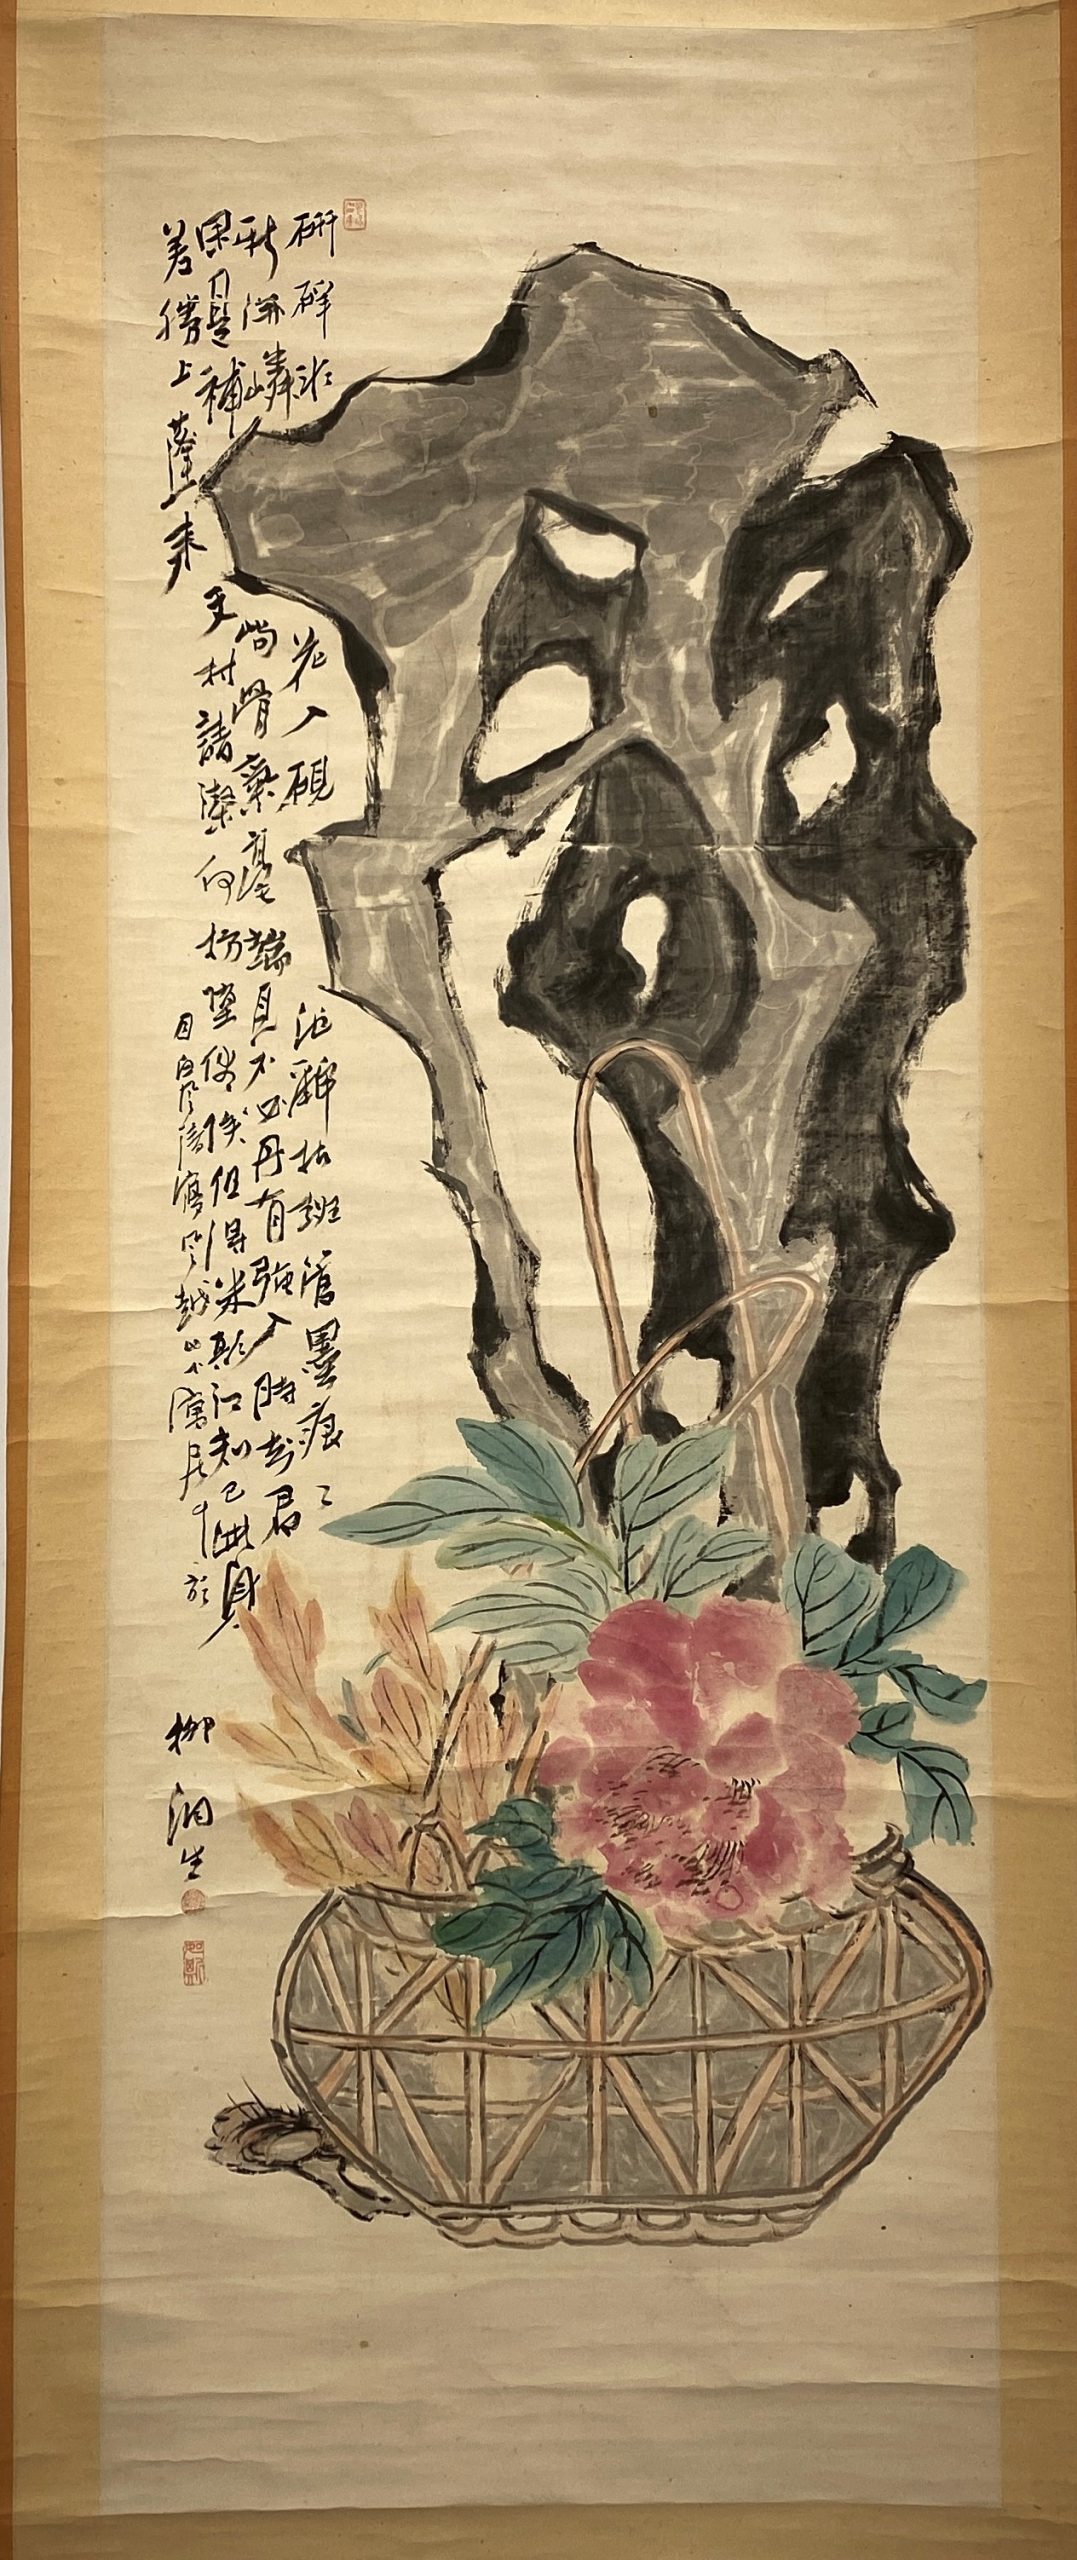 21347	「柳湘生」画 岩花図 軸	136×48.5㎝